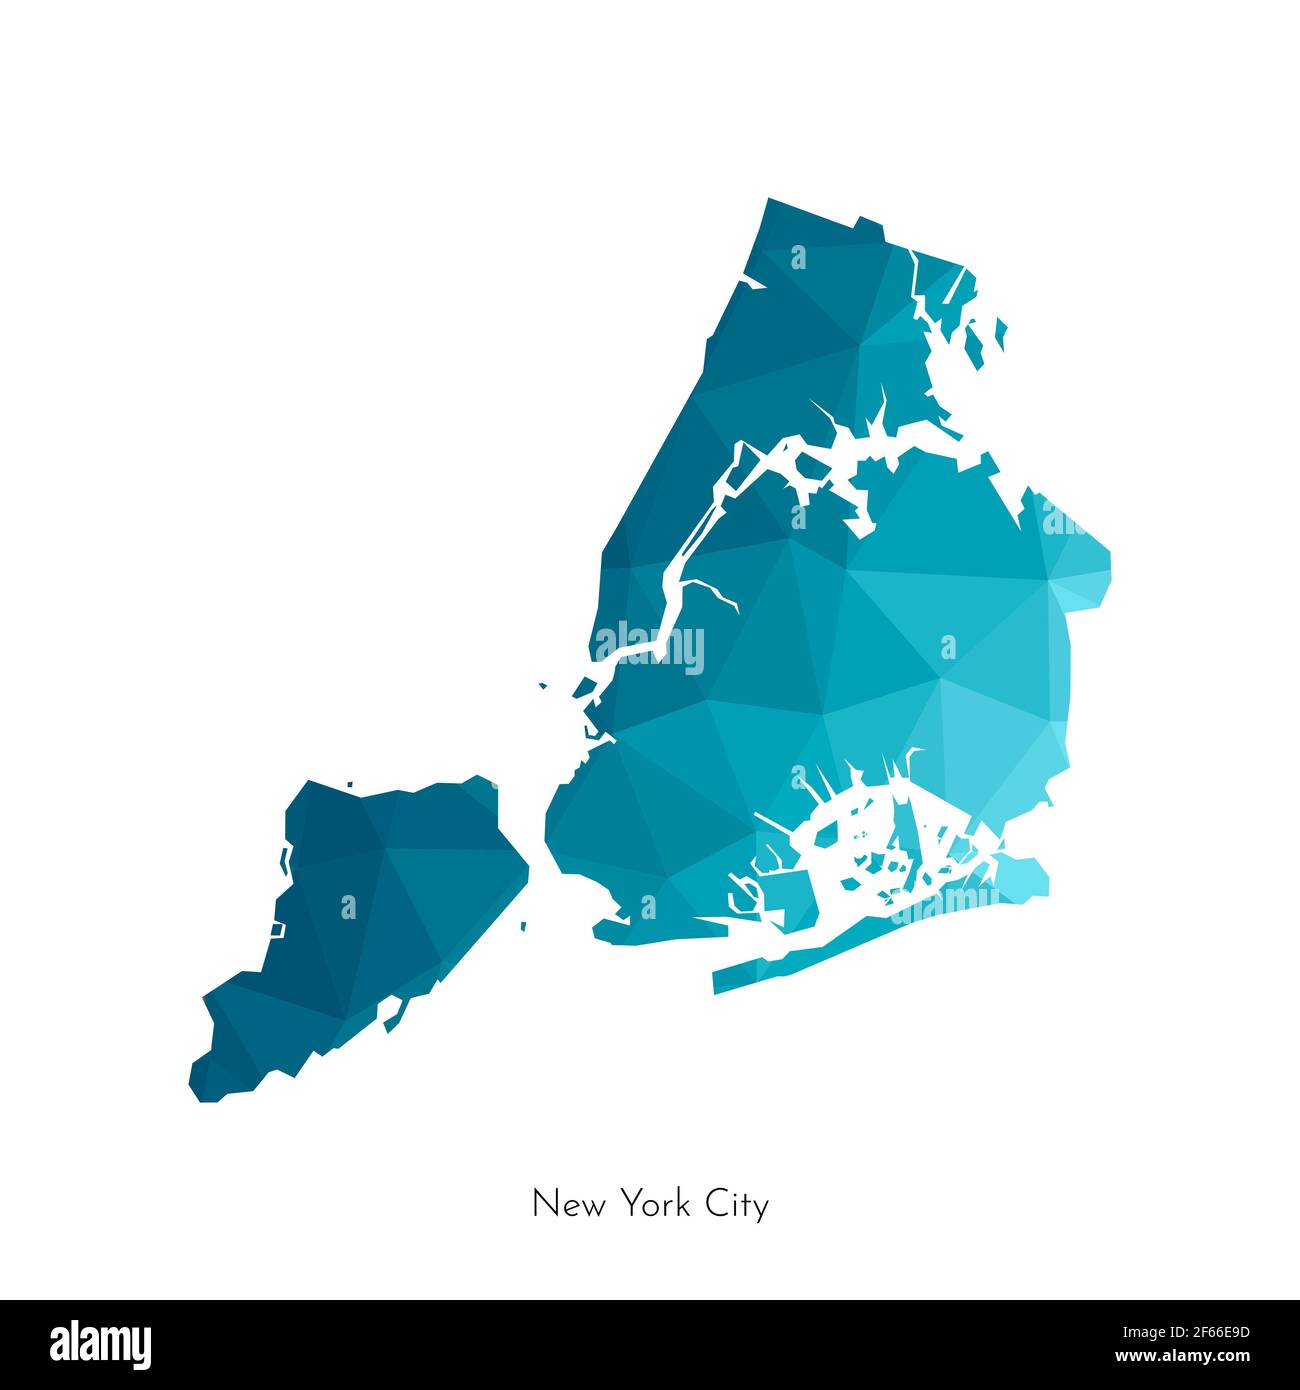 Illustrazione vettoriale isolata con forma poligonale semplificata della mappa di New York City (città negli Stati Uniti). Silhouette blu in poly bassa della Big App Illustrazione Vettoriale